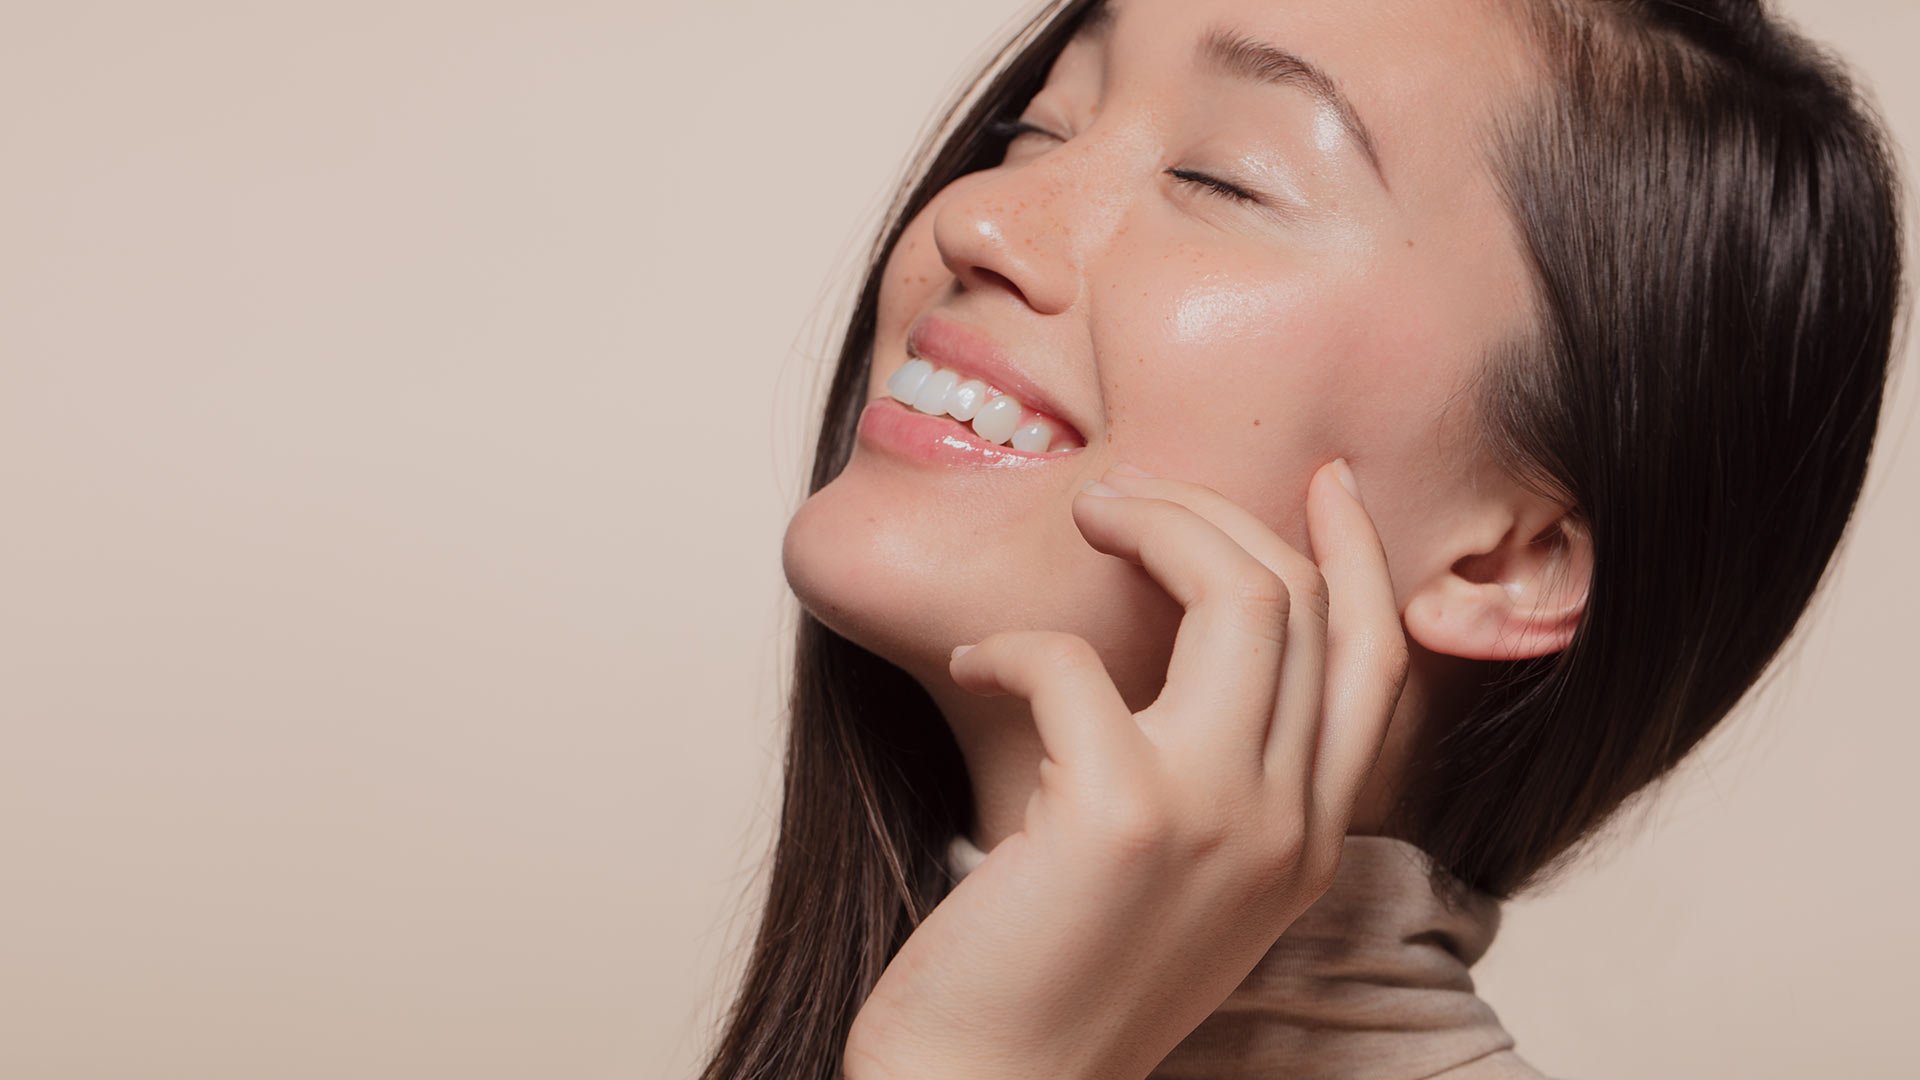 Skin Care Organization Tips for the Perfect Shelfie - L'Oréal Paris